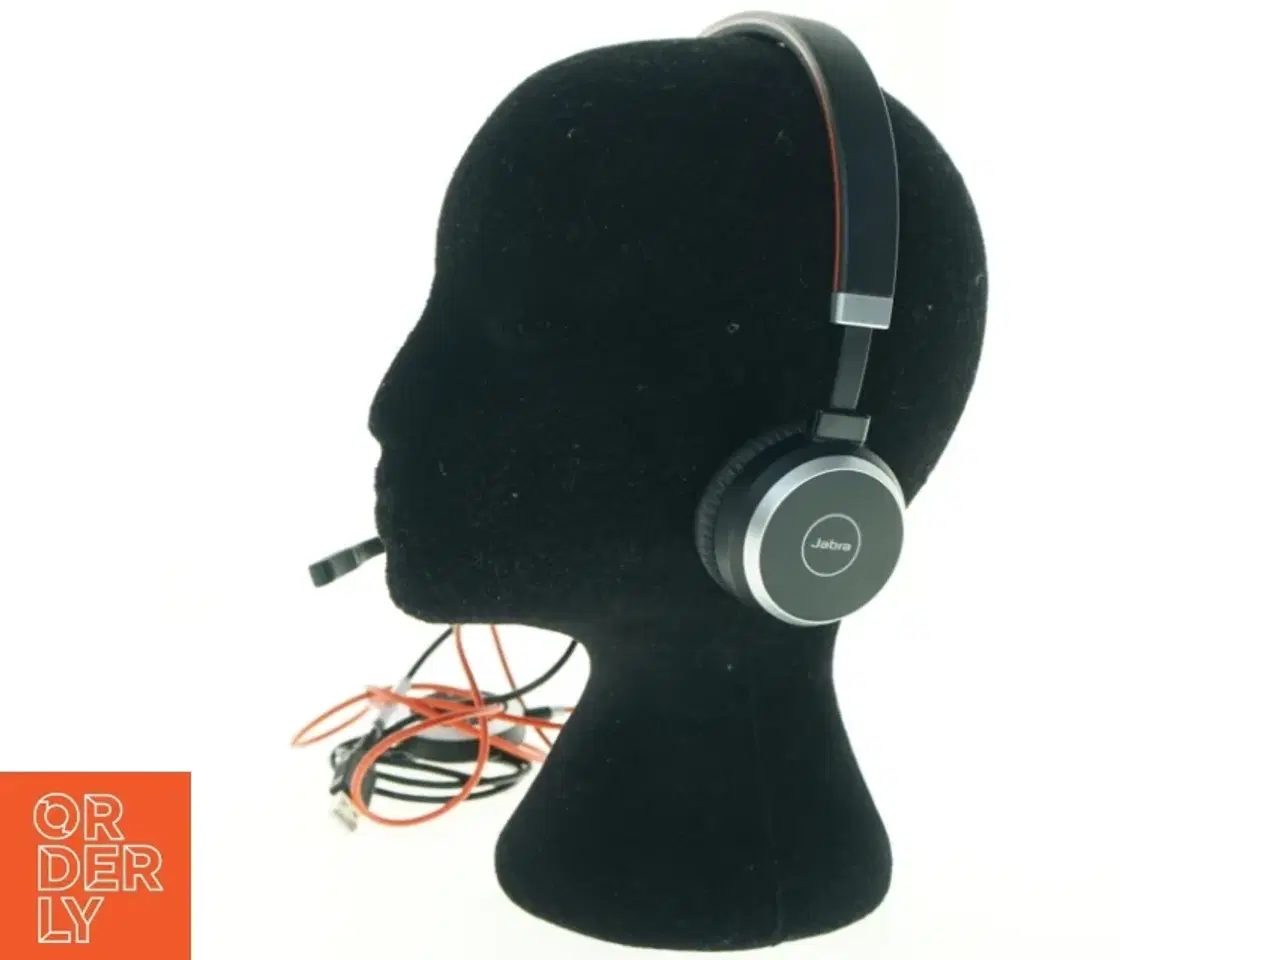 Billede 1 - Jabra headset med mikrofon fra Jabra (str. 17 x, 18 cm)